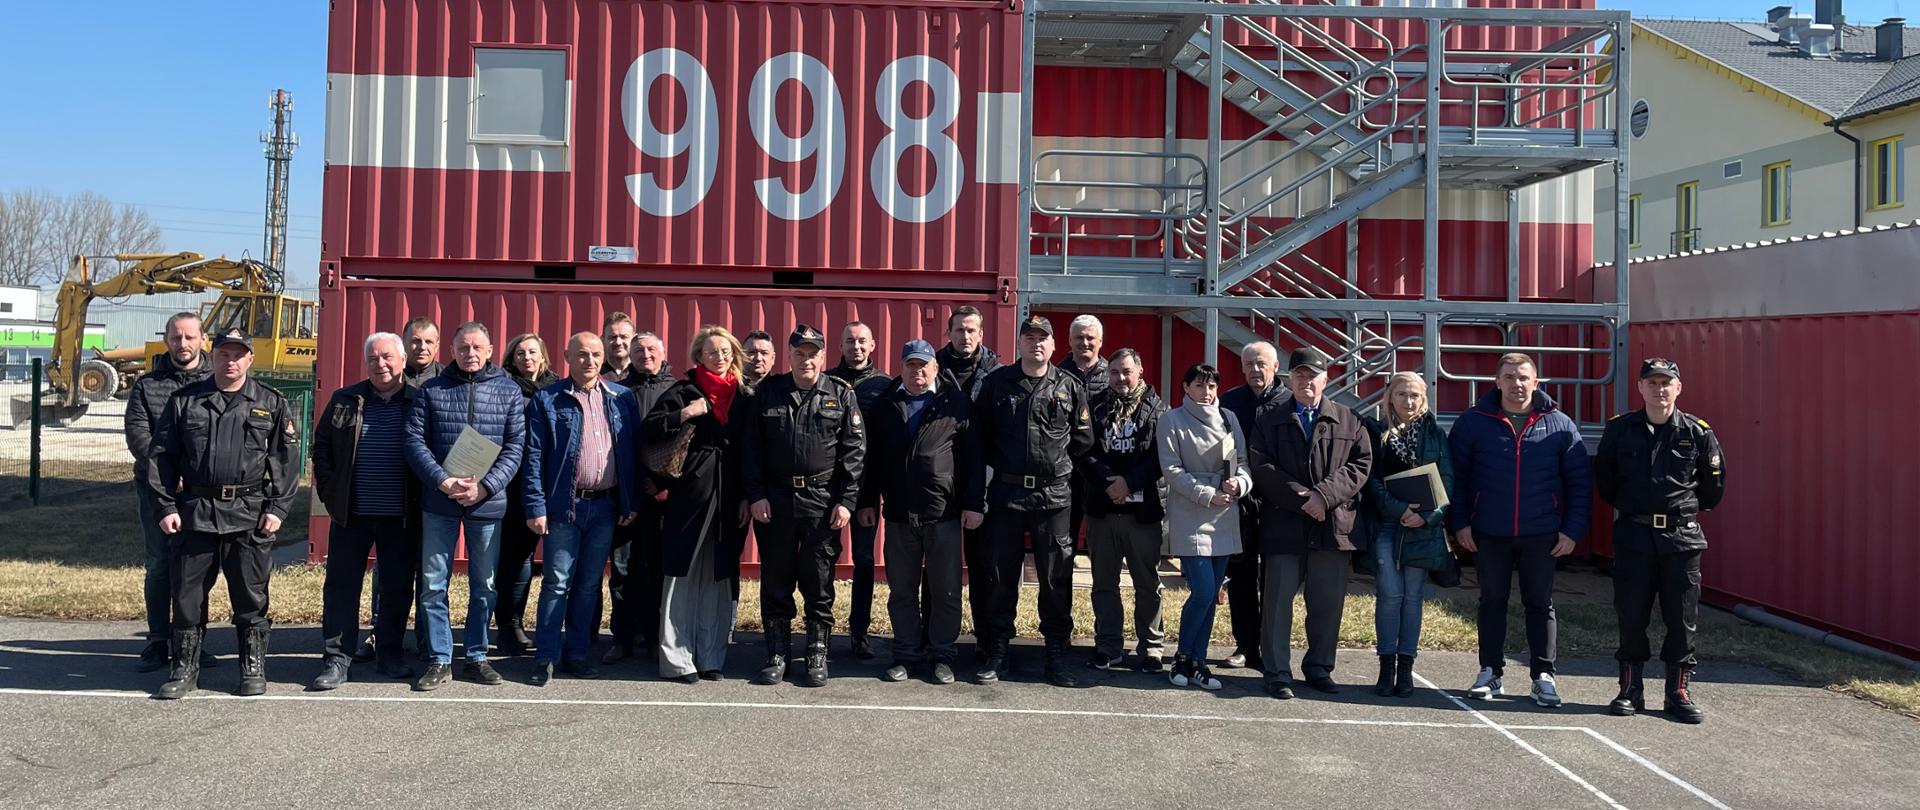 Zdjęcie przedstawia pamiątkową fotografię uczestników szkolenia wraz z kadrą Ośrodka Szkolenia KW PSP w Kielcach. Uczestnicy są zadowoleni z pomyślnego zdania egzaminu. Kadra ośrodka szkolenia ubrana jest w mundury dowódczo-sztabowe. 